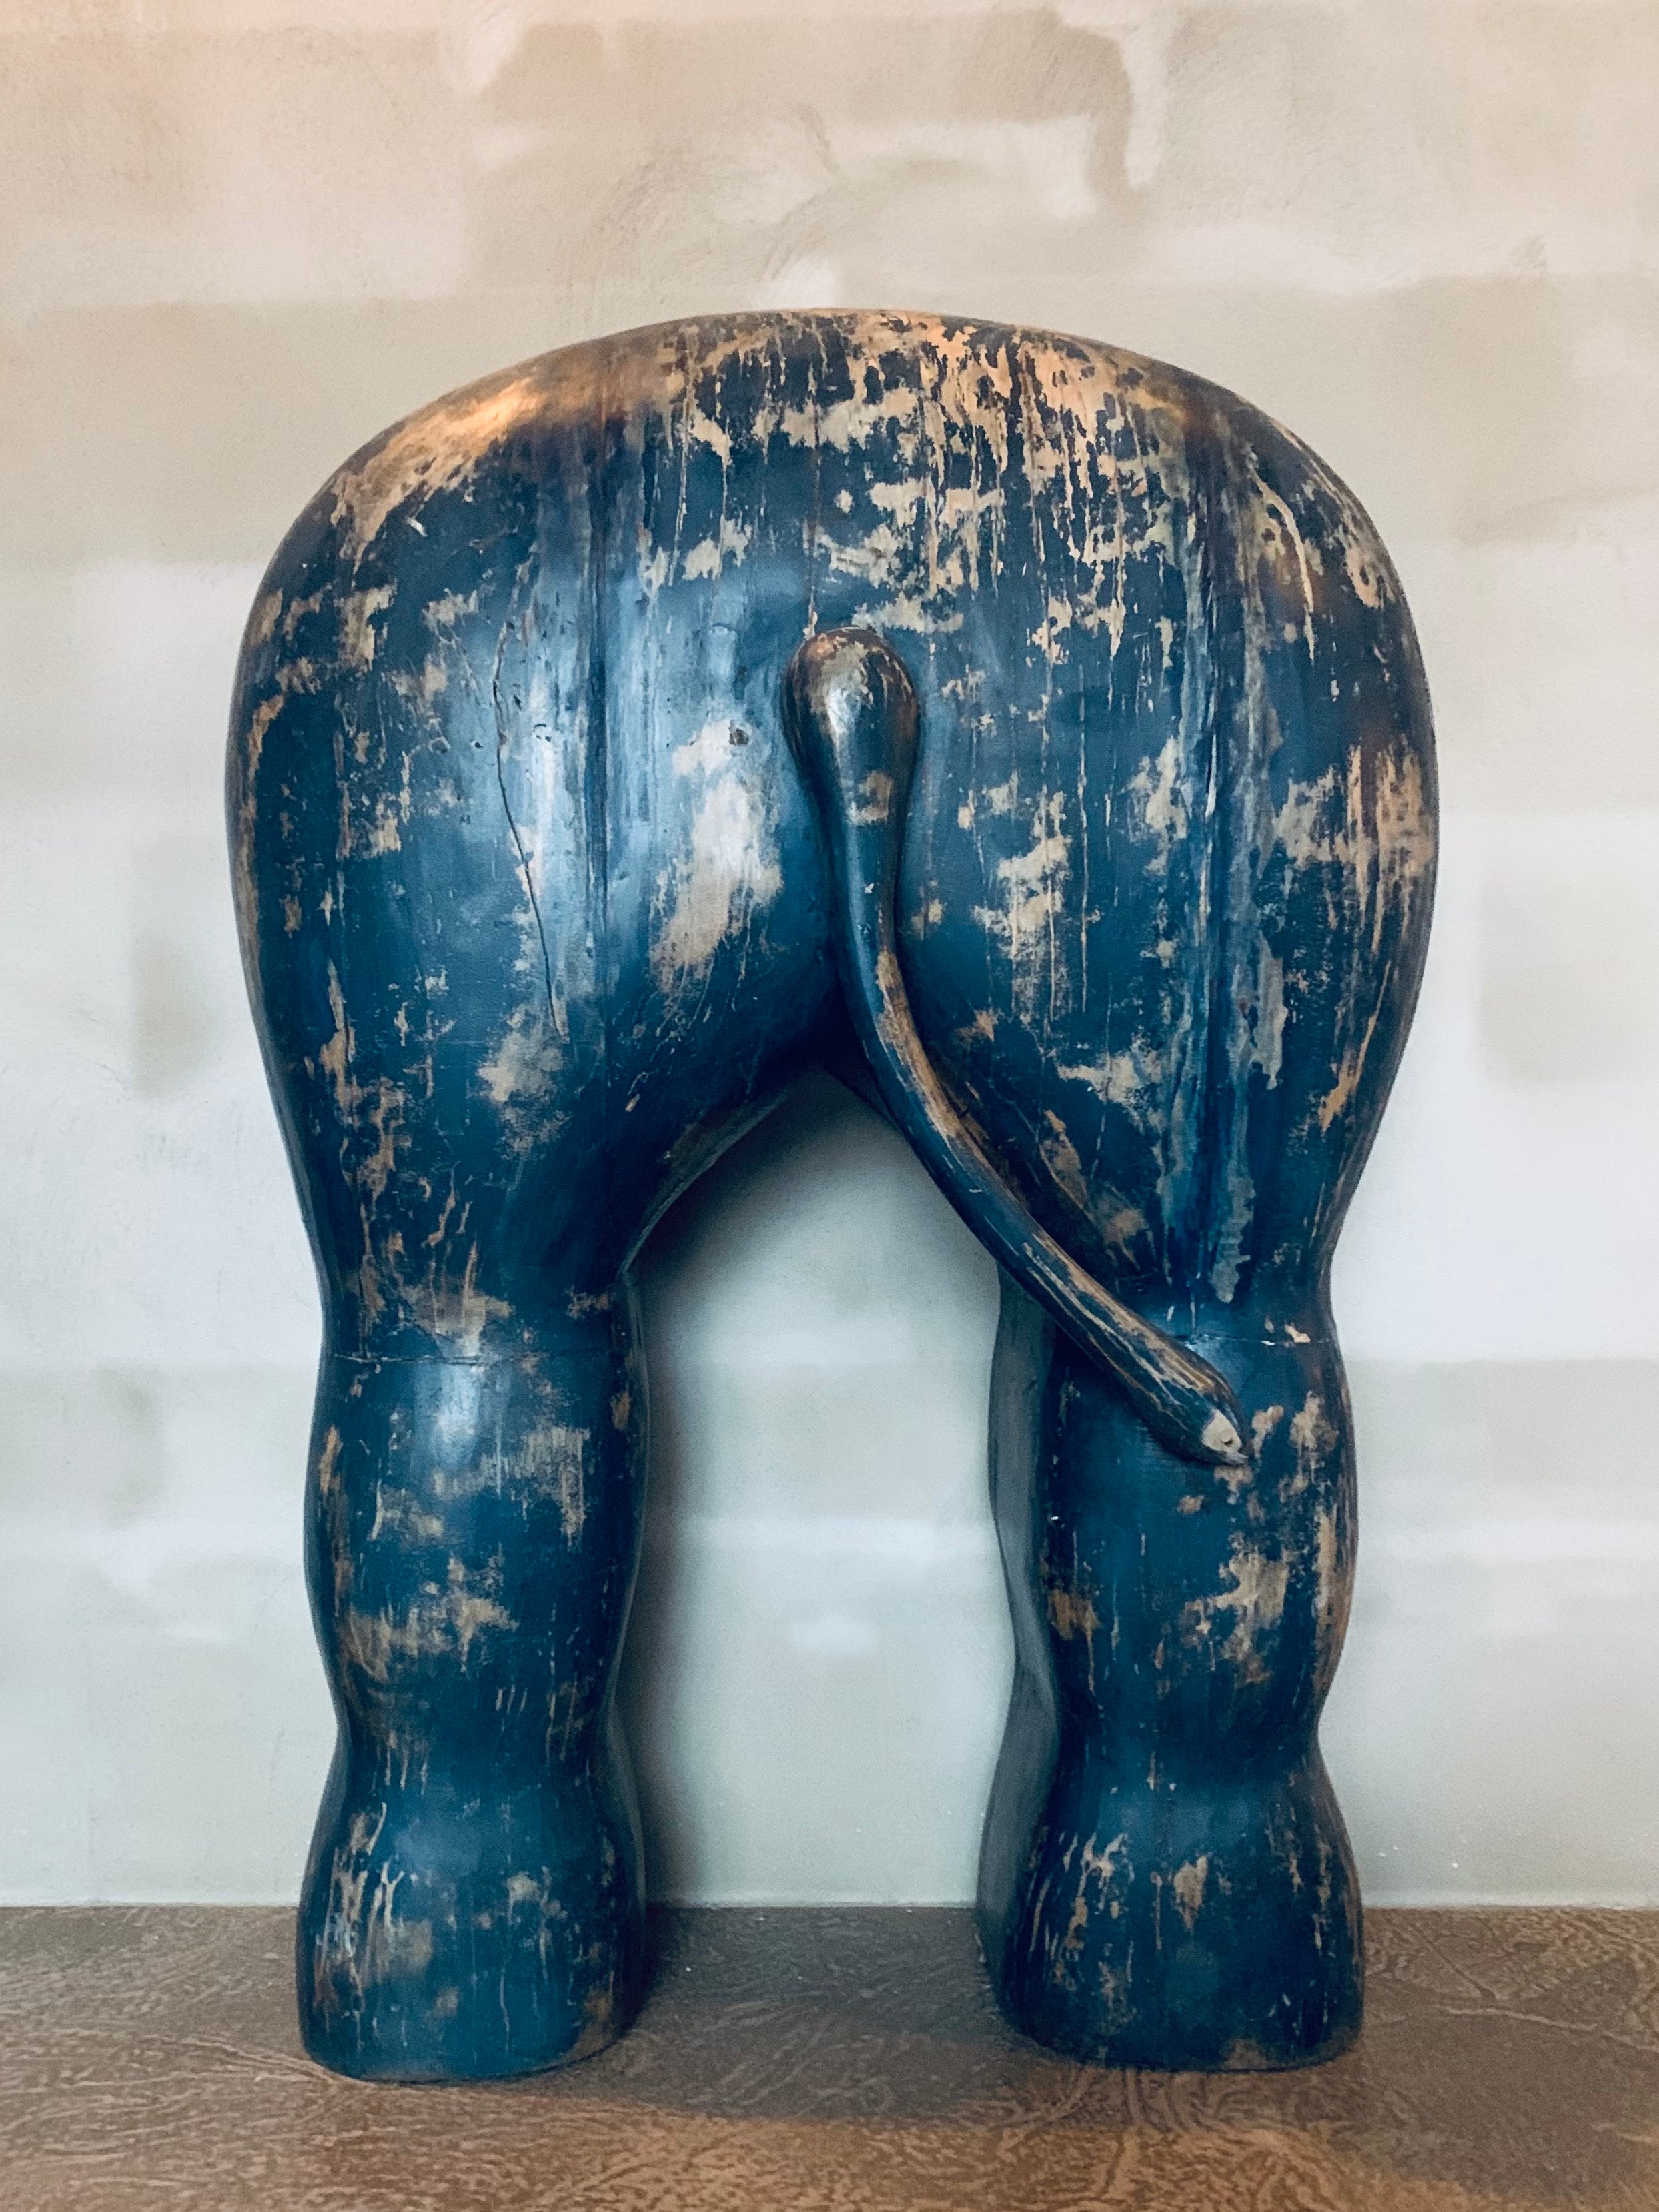 Elephant's butt